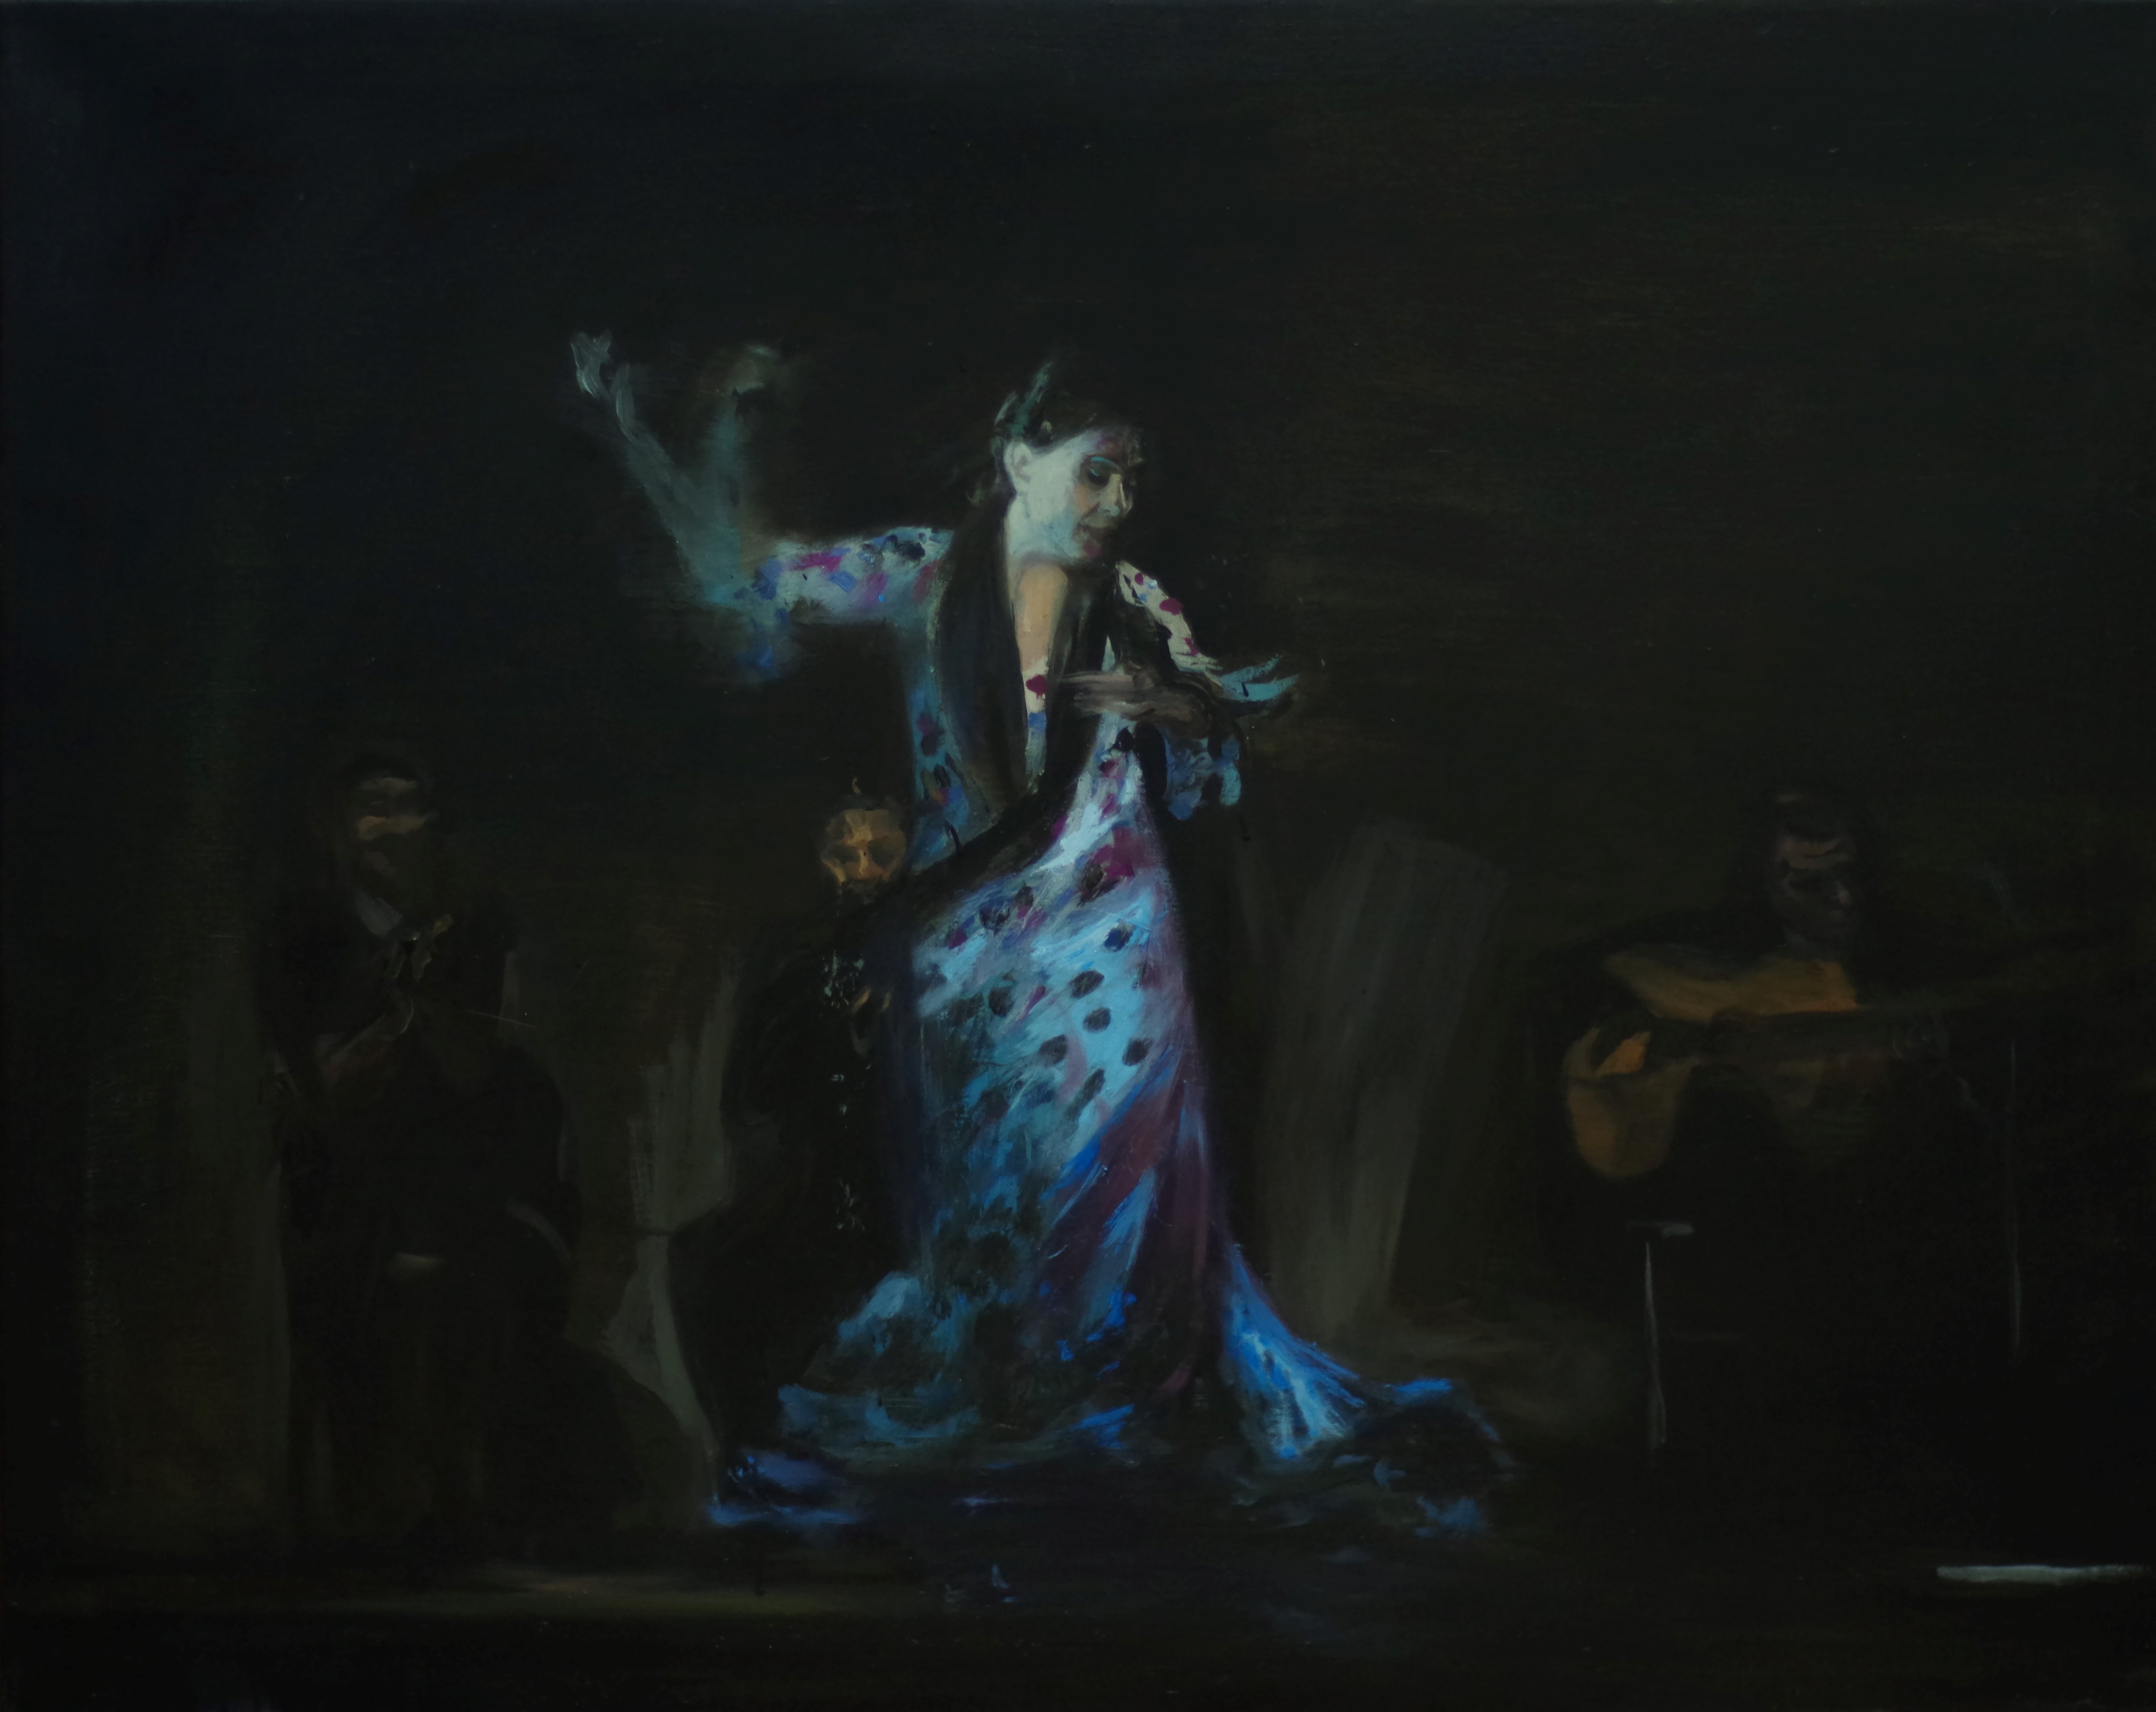 'Shadows' (oil on canvas, 100x81)